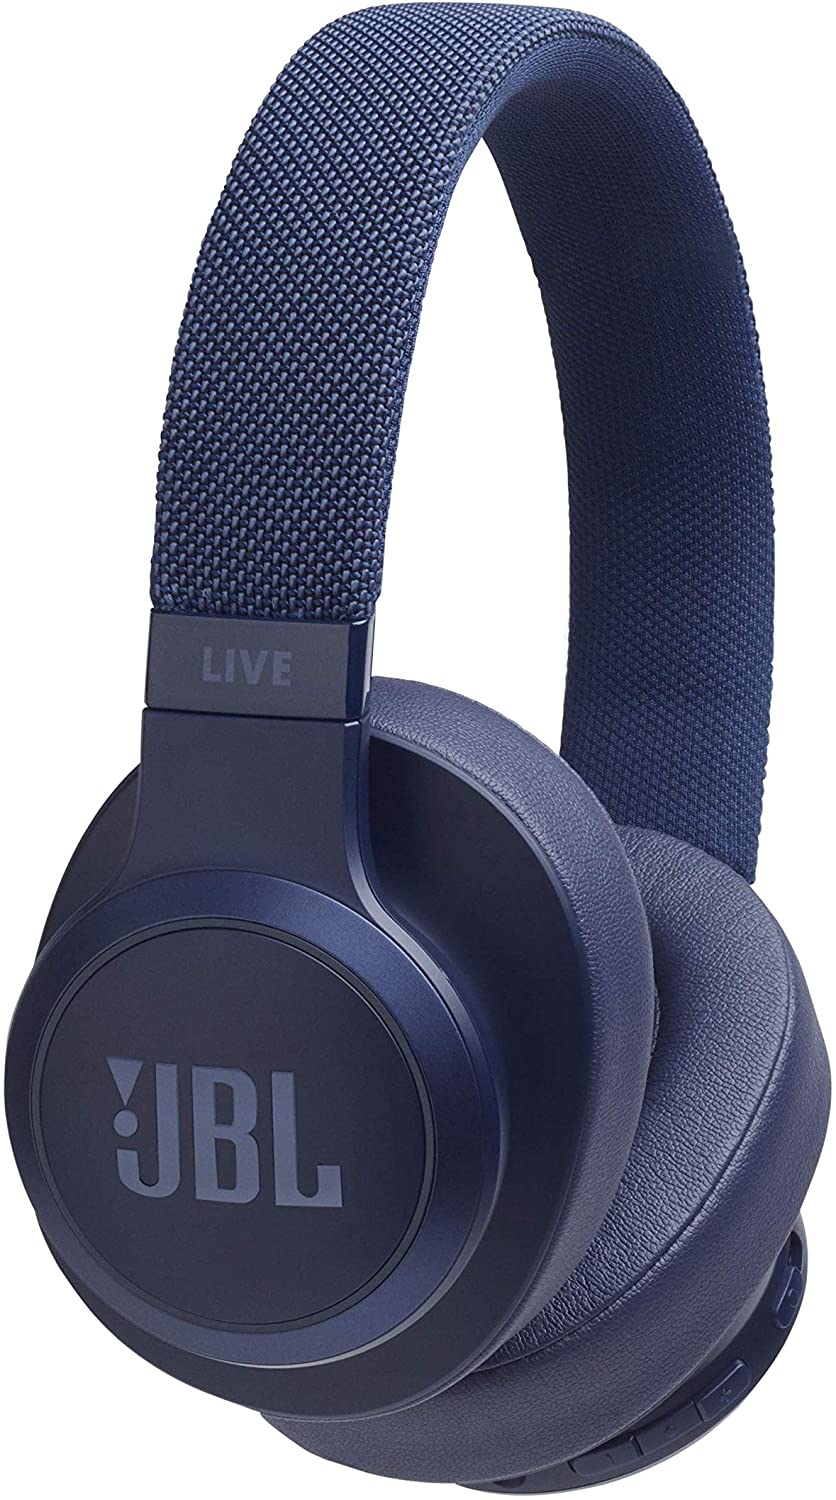 Casque JBL Bluetooth 500 BT bleu, avec commande pour appels